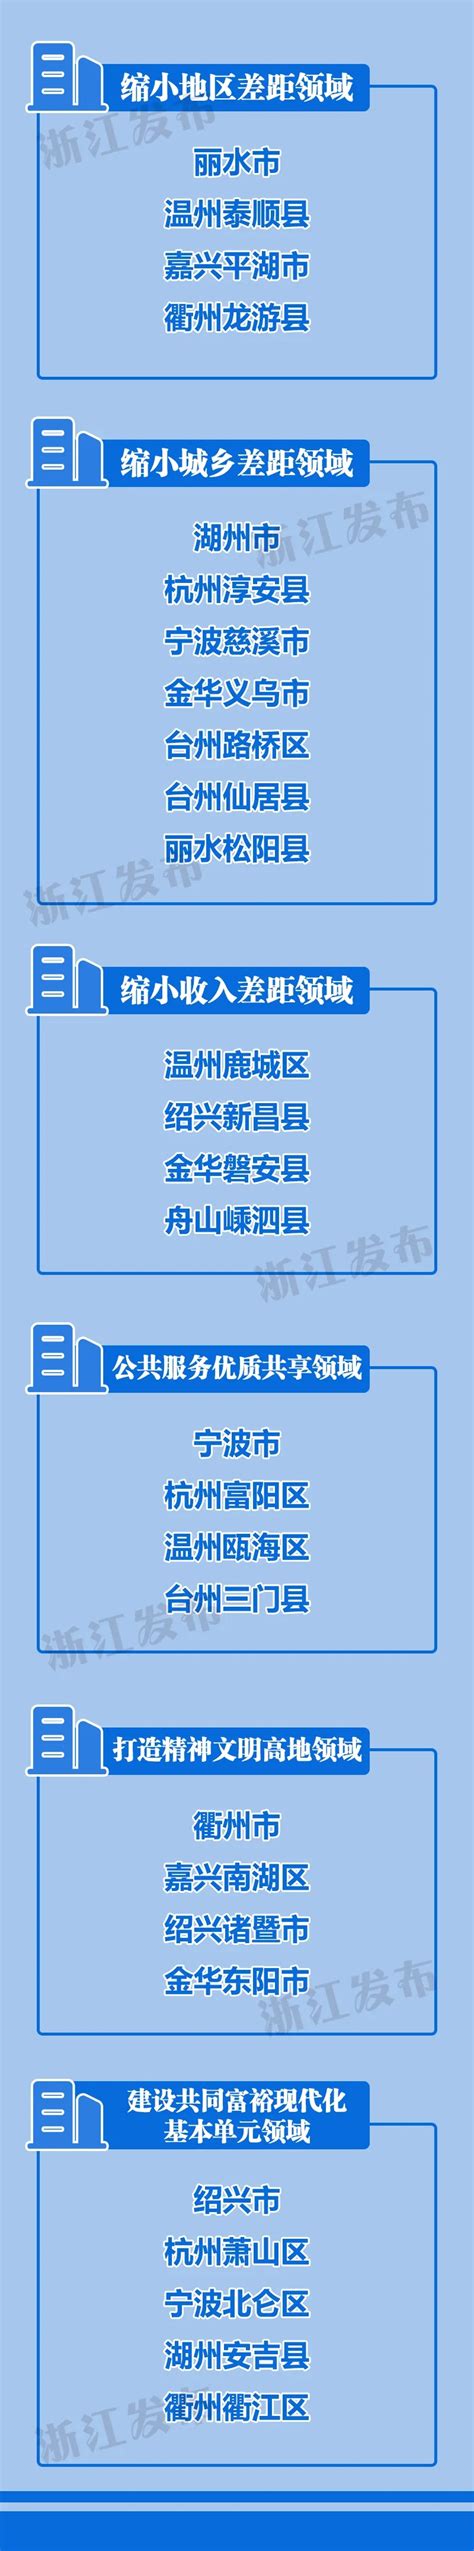 浙江高质量发展建设共同富裕示范区 台州3个上榜这份名单-台州频道